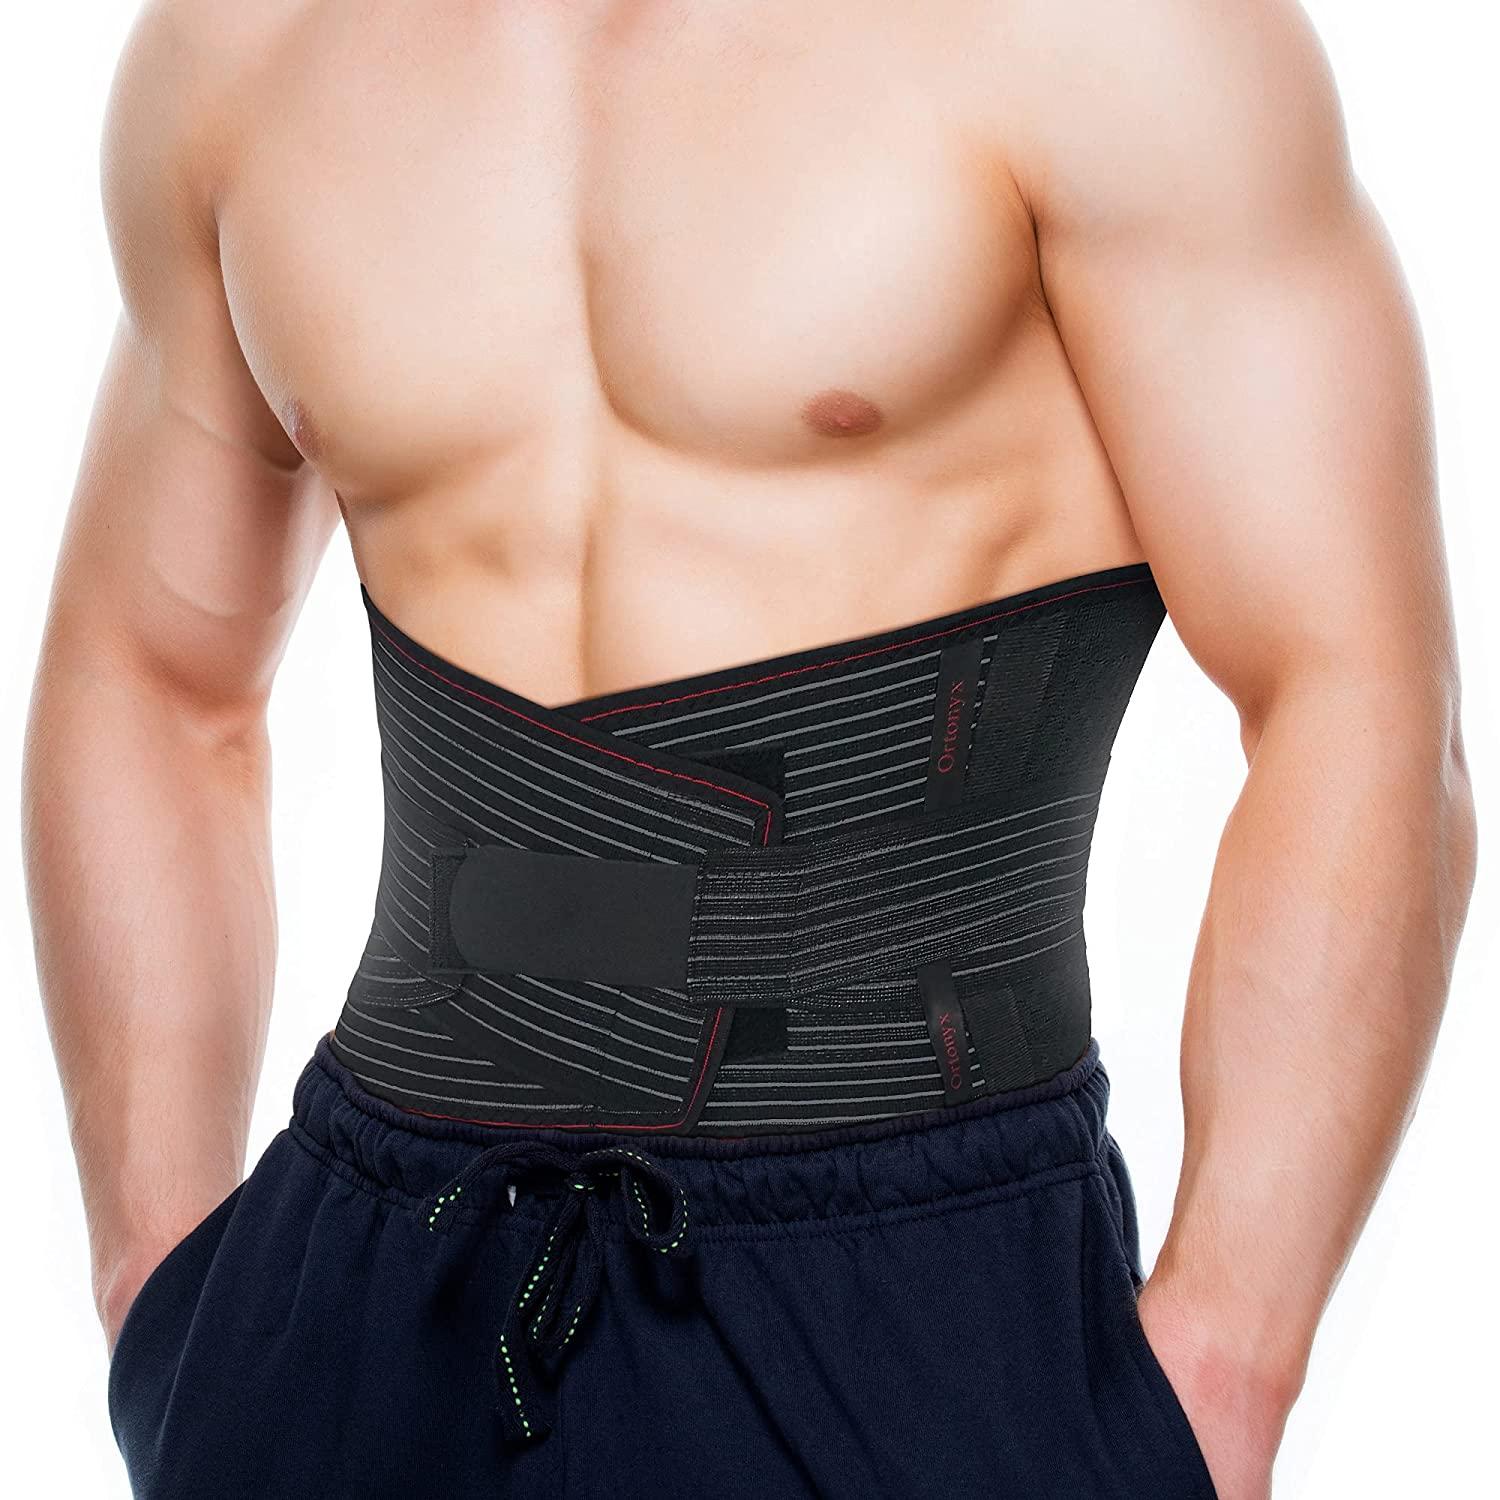 ADEPT ls belt , back pain belt , back support belt , lumbar support belt , waist  belt , stomach belt , waist support belt , stomach belt , back pain belt